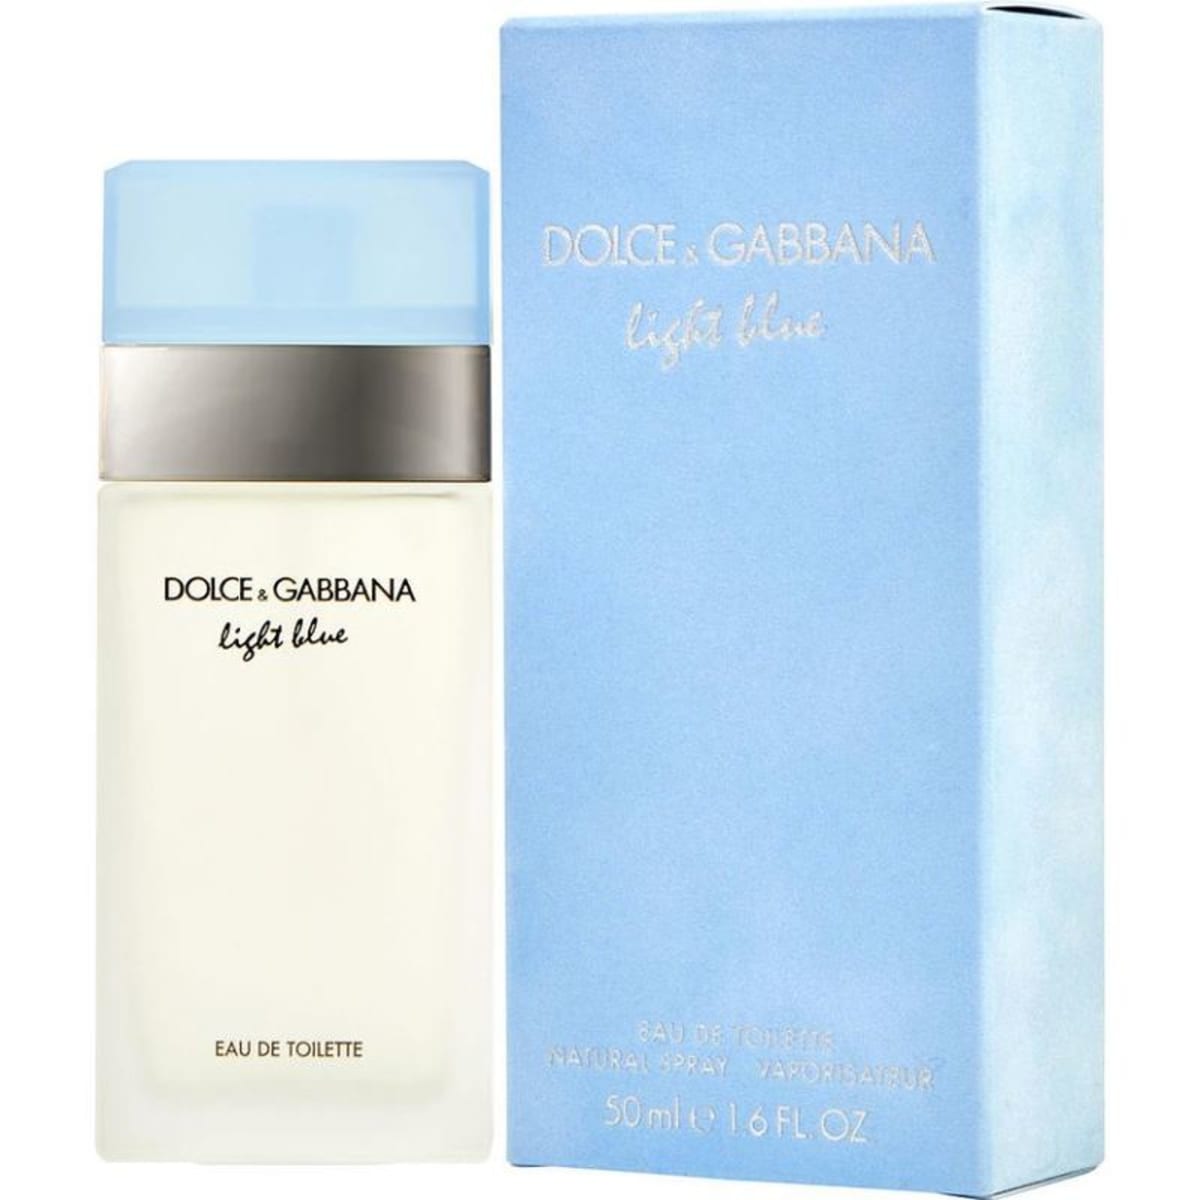 Buy Light Blue by Dolce & Gabbana for Women EDT 50mL | Arablly.com